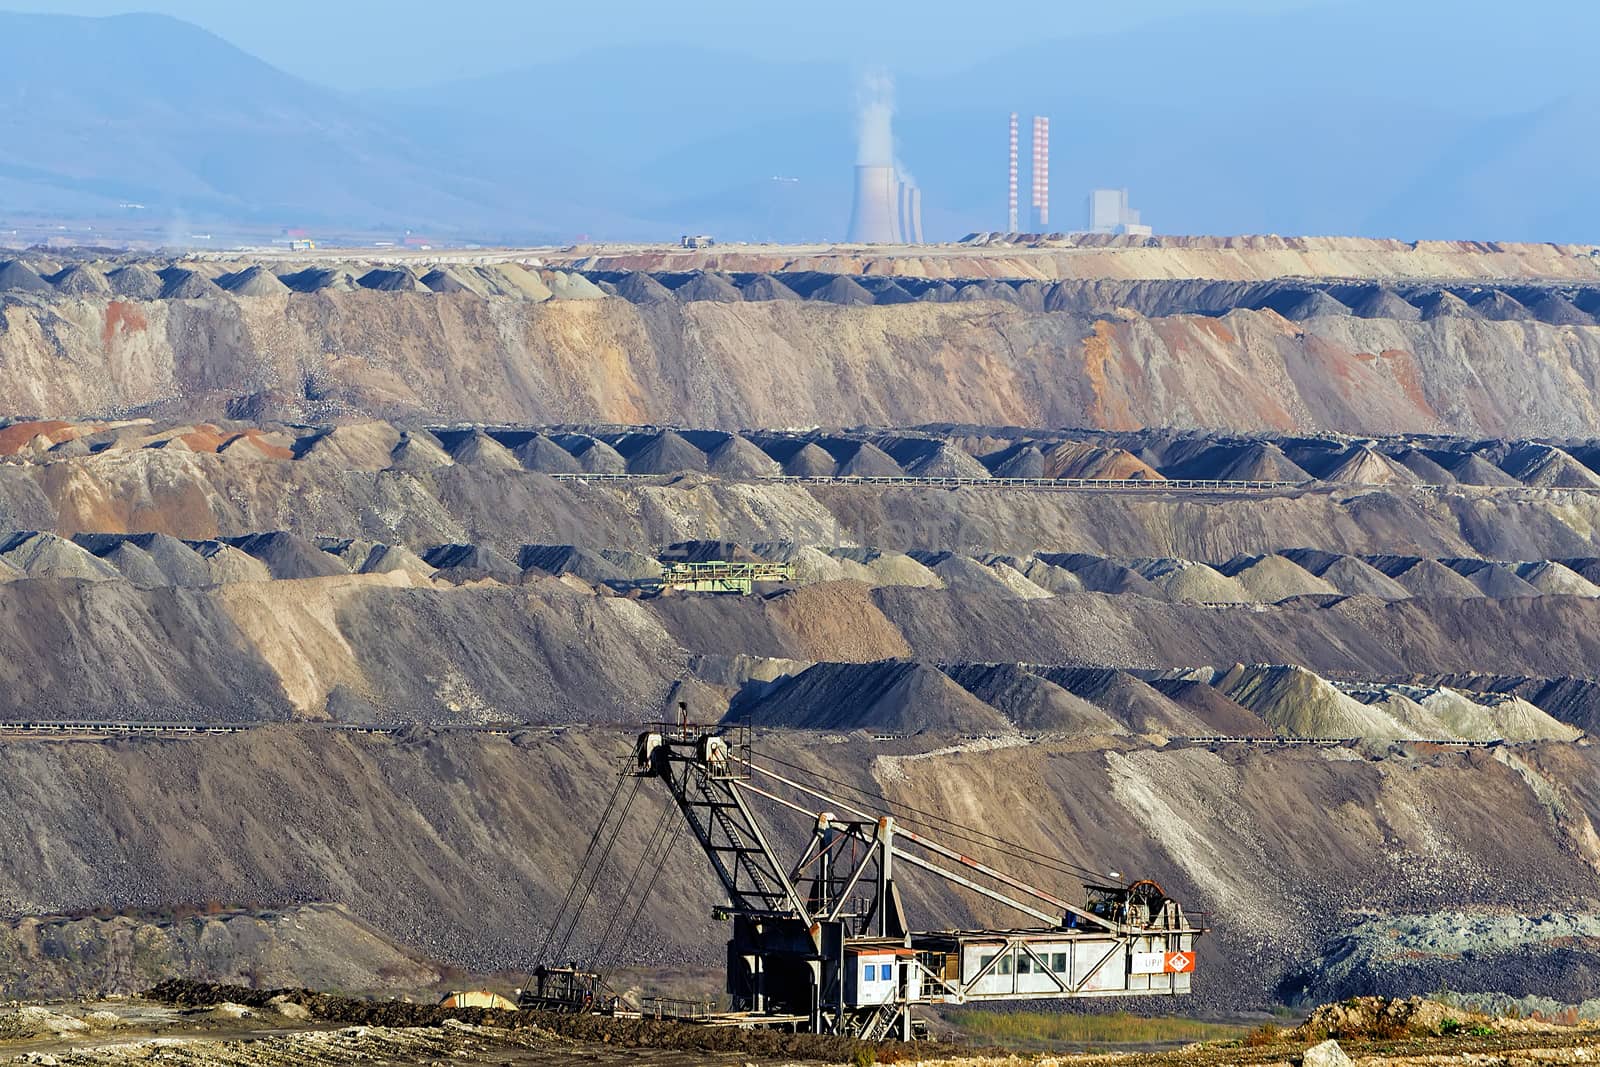 Very Large excavators at work in lignite (brown coal) mine in Ko by ververidis